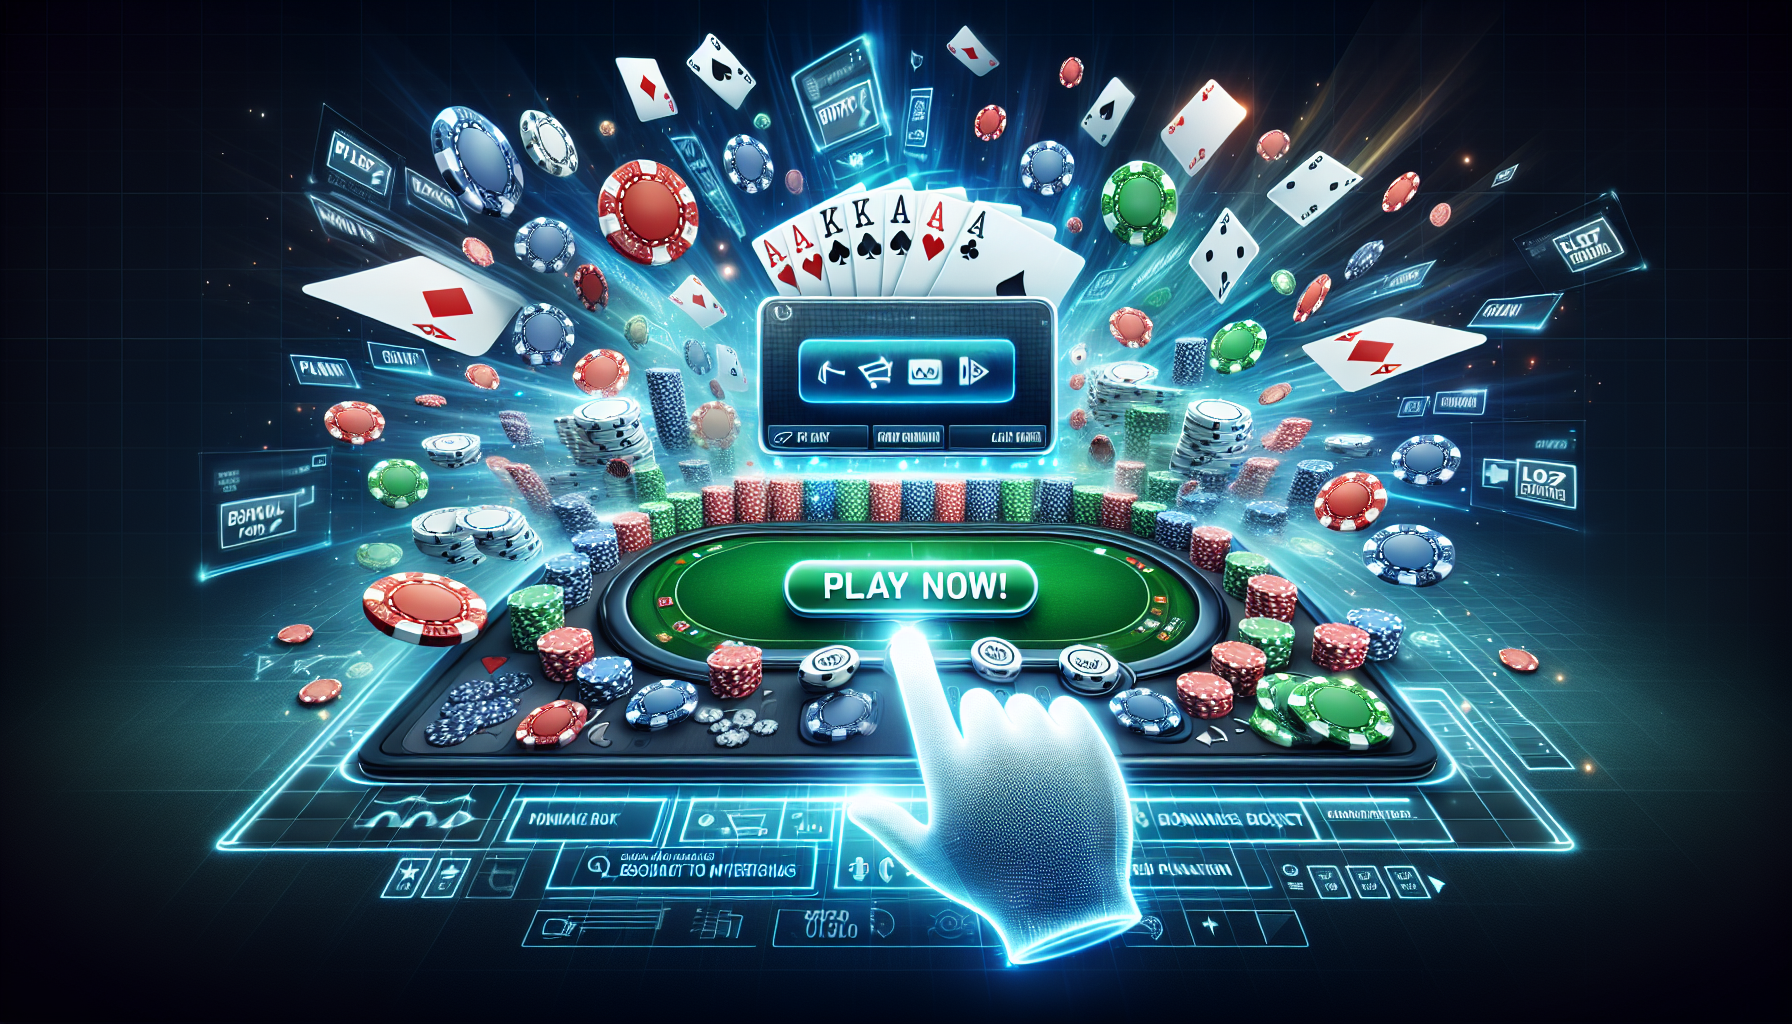 découvrez les meilleurs sites de poker en ligne pour jouer et gagner de l'argent. profitez de jeux de poker passionnants et de bonus exclusifs sur les plateformes de poker recommandées.